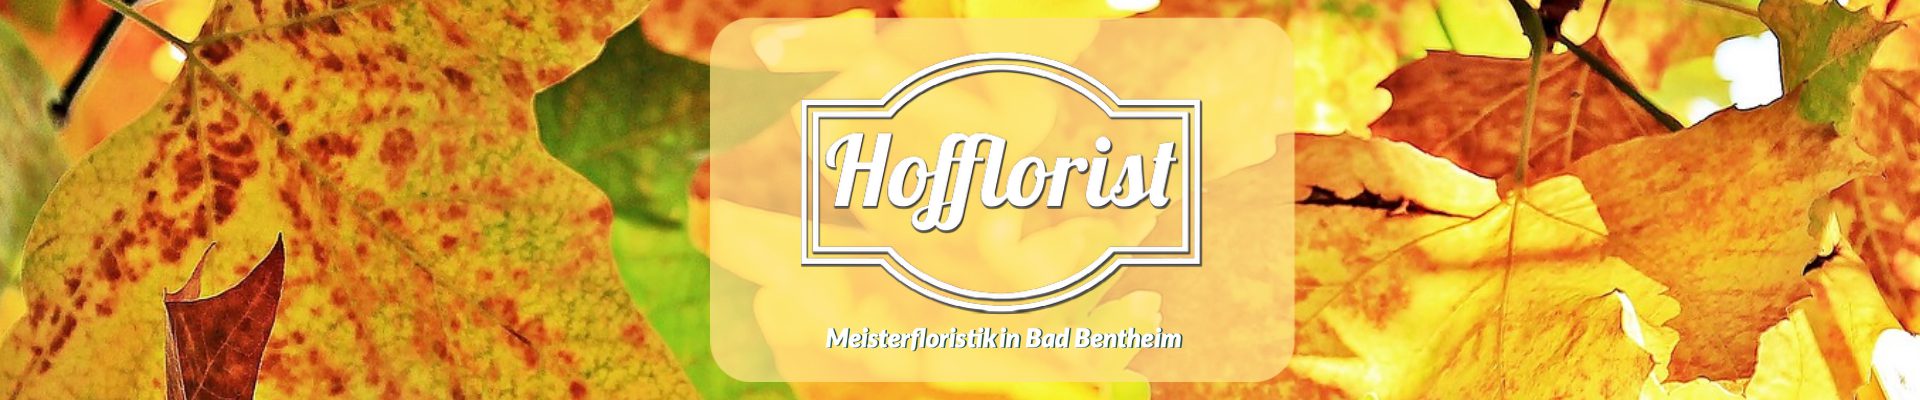 Hofflorist